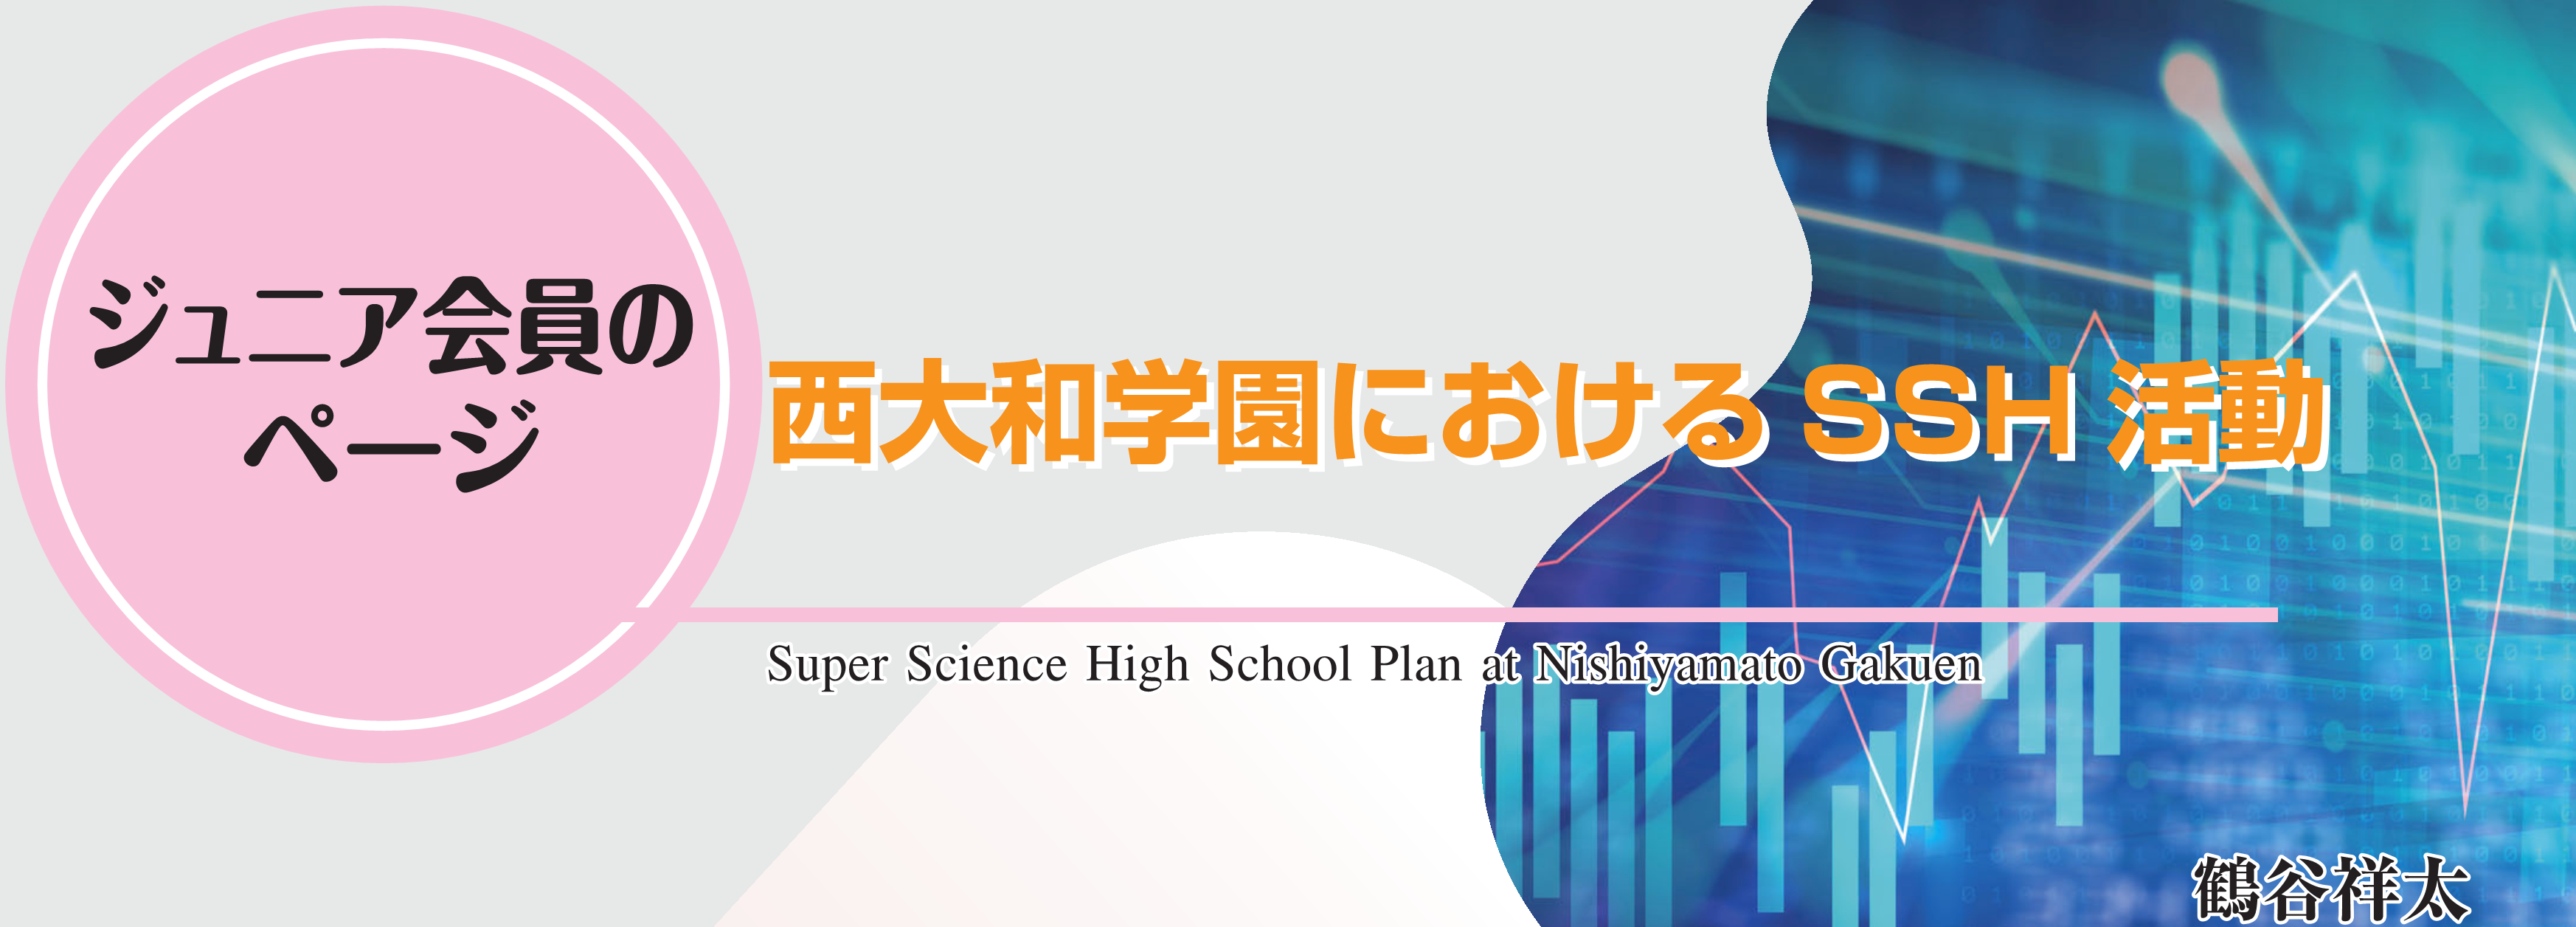 ジュニア会員のページ　西大和学園におけるSSH活動 Super Science High School Plan at Nishiyamato Gakuen 鶴谷祥太